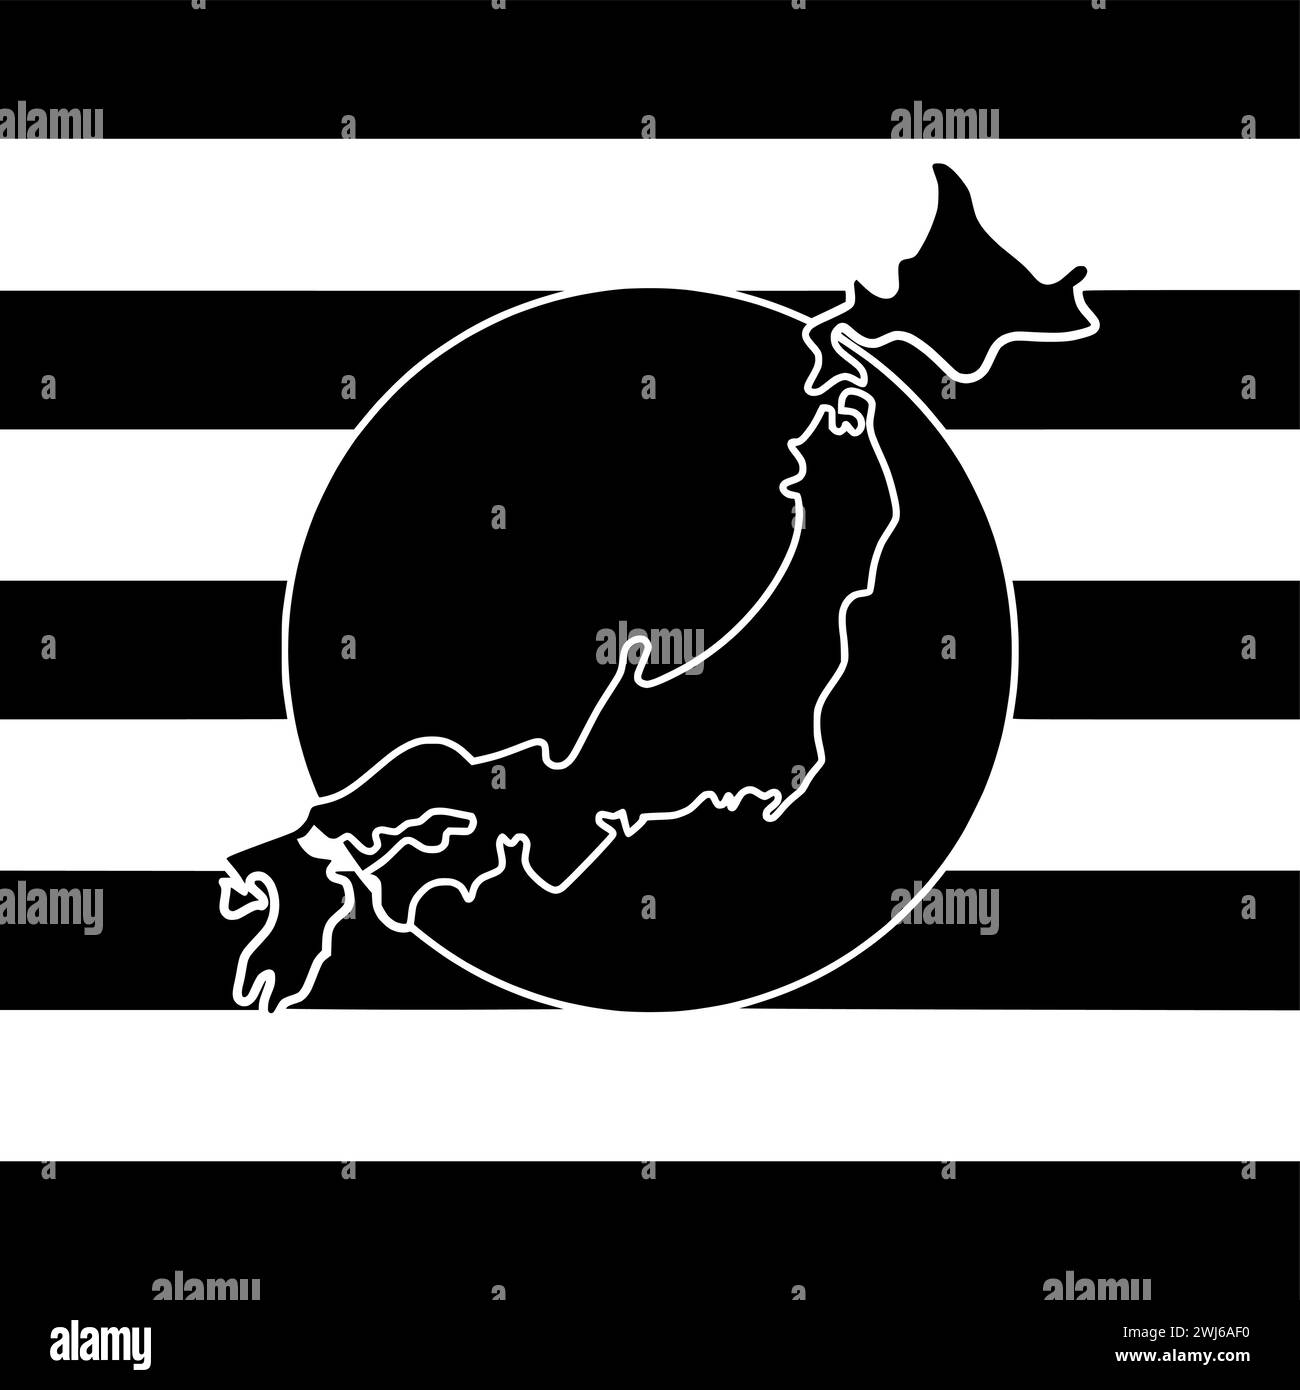 Schwarze japan-Silhouette oder flache Landkarte mit Streifen-Logo-Flagge für japaner mit Nationalsymbol und Nation-Form Land als patriotisch bis strukturiert Stock Vektor